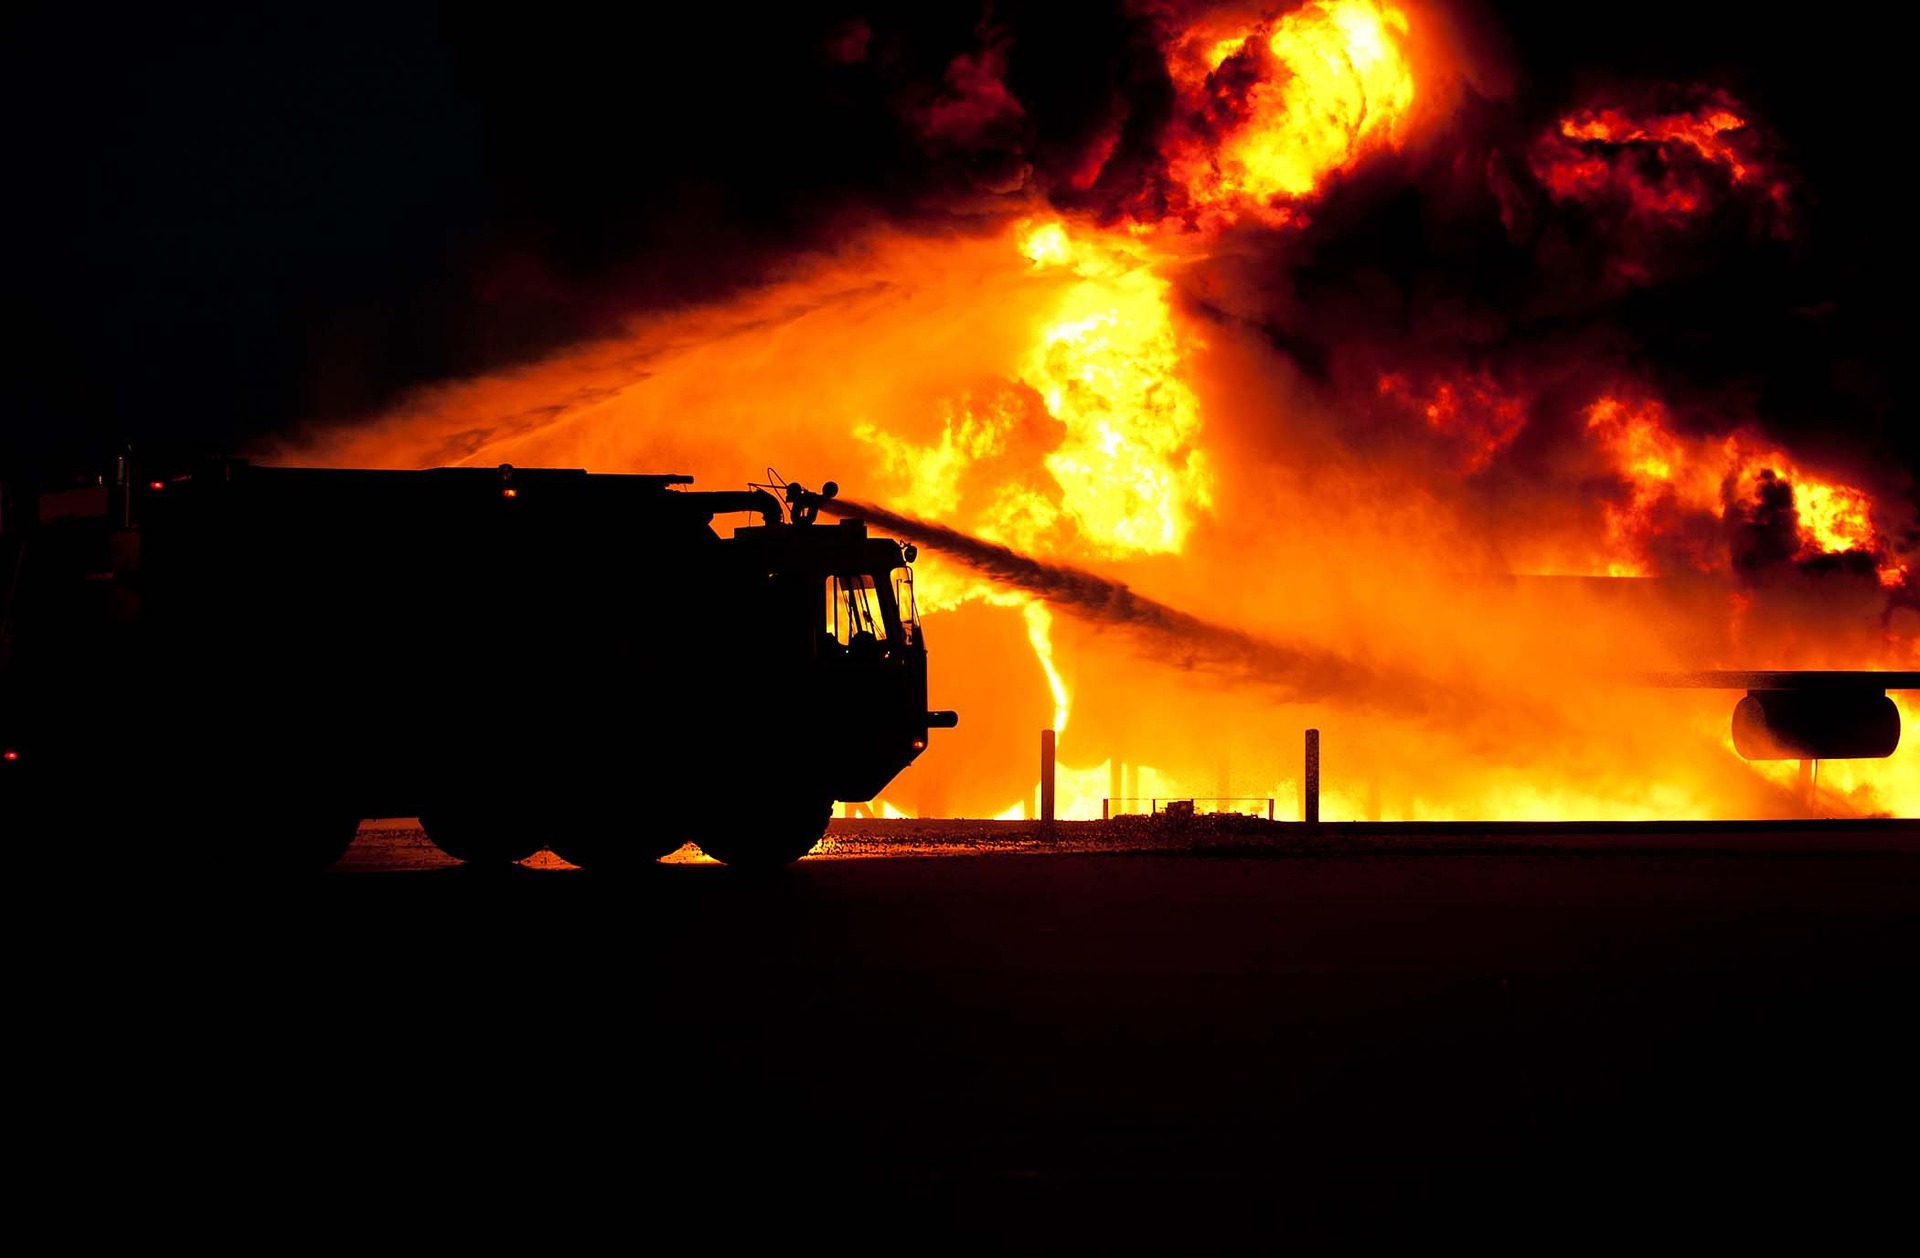 Naudzubillah! Kobaran Api Kepung Penduduk Negara Barat, Disebut Sebagai Tanda Kiamat, Benarkah?